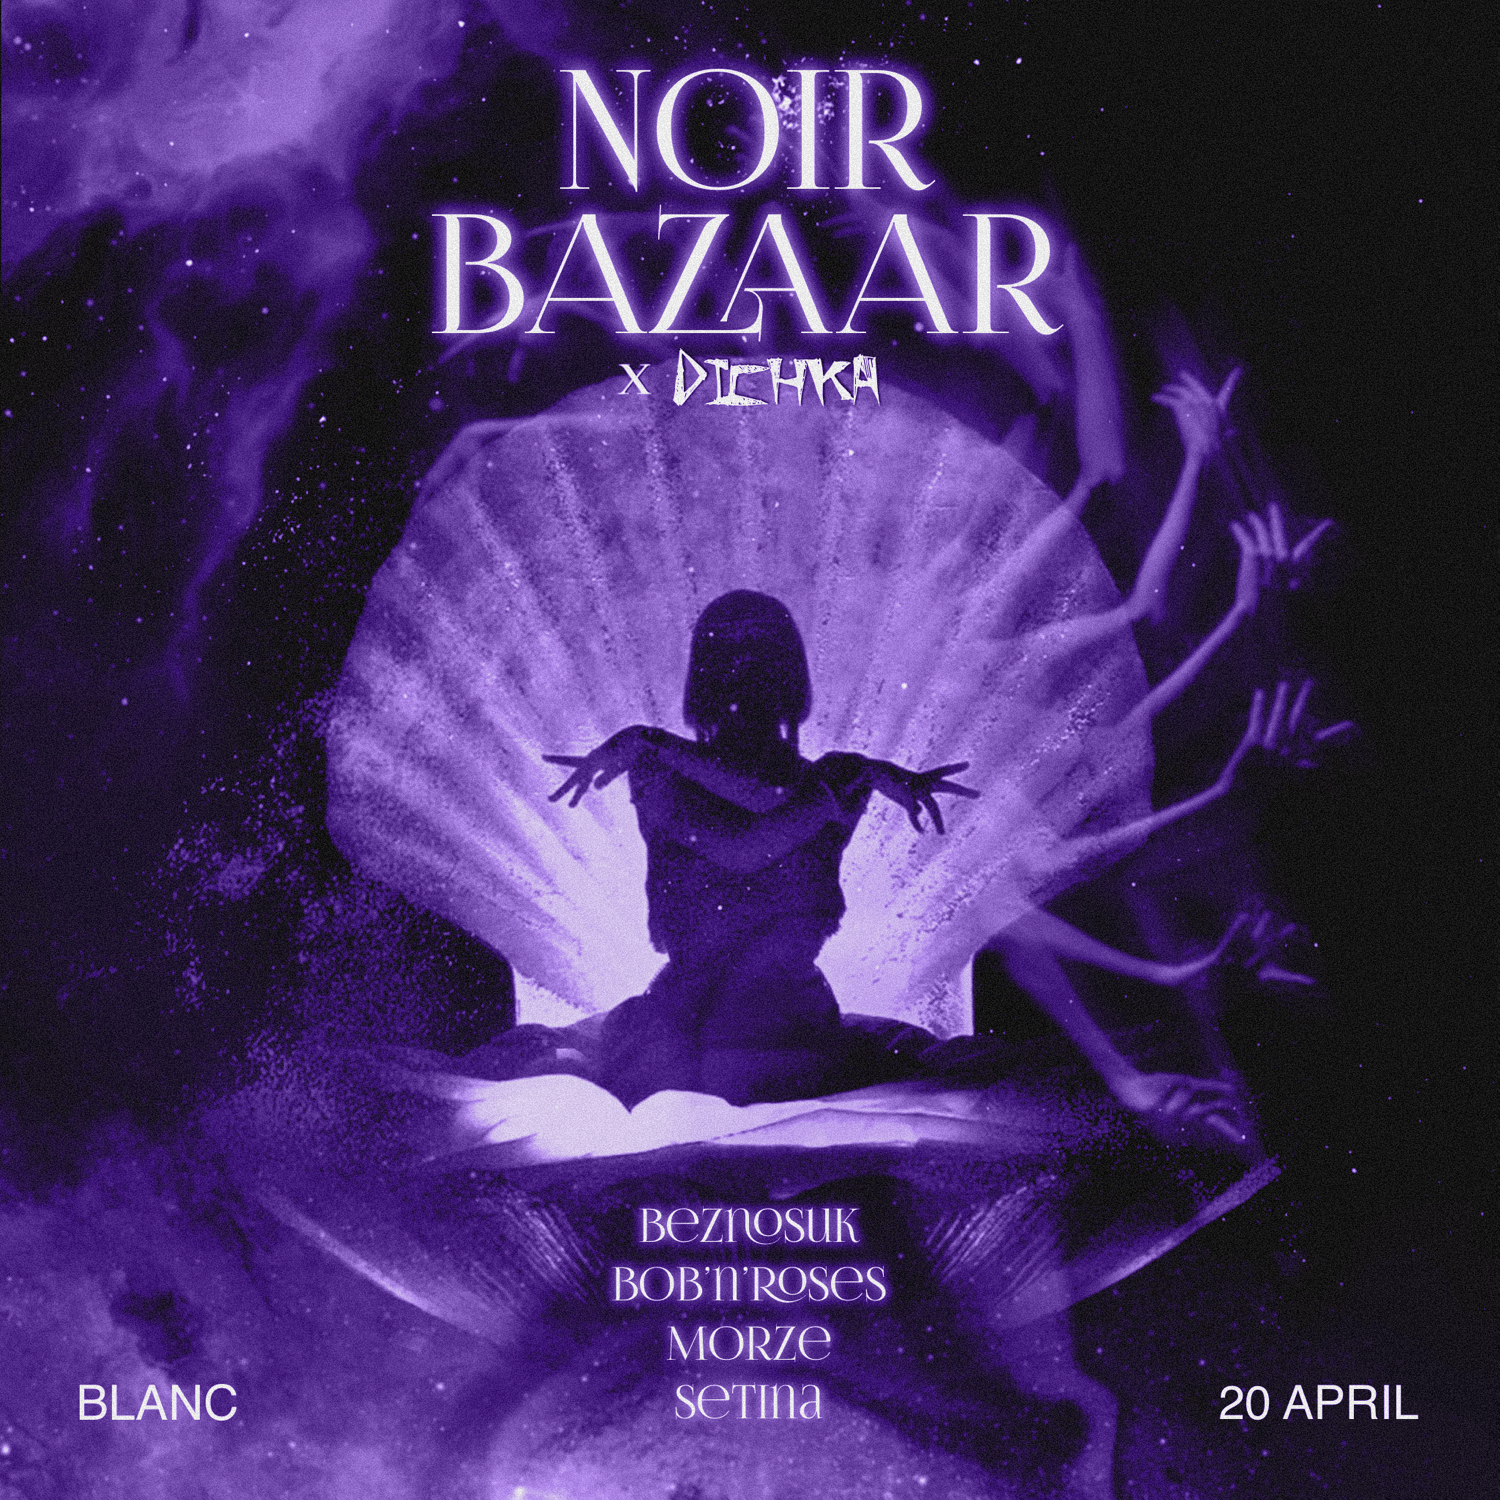 Noir Bazaar x Dichka - フライヤー表